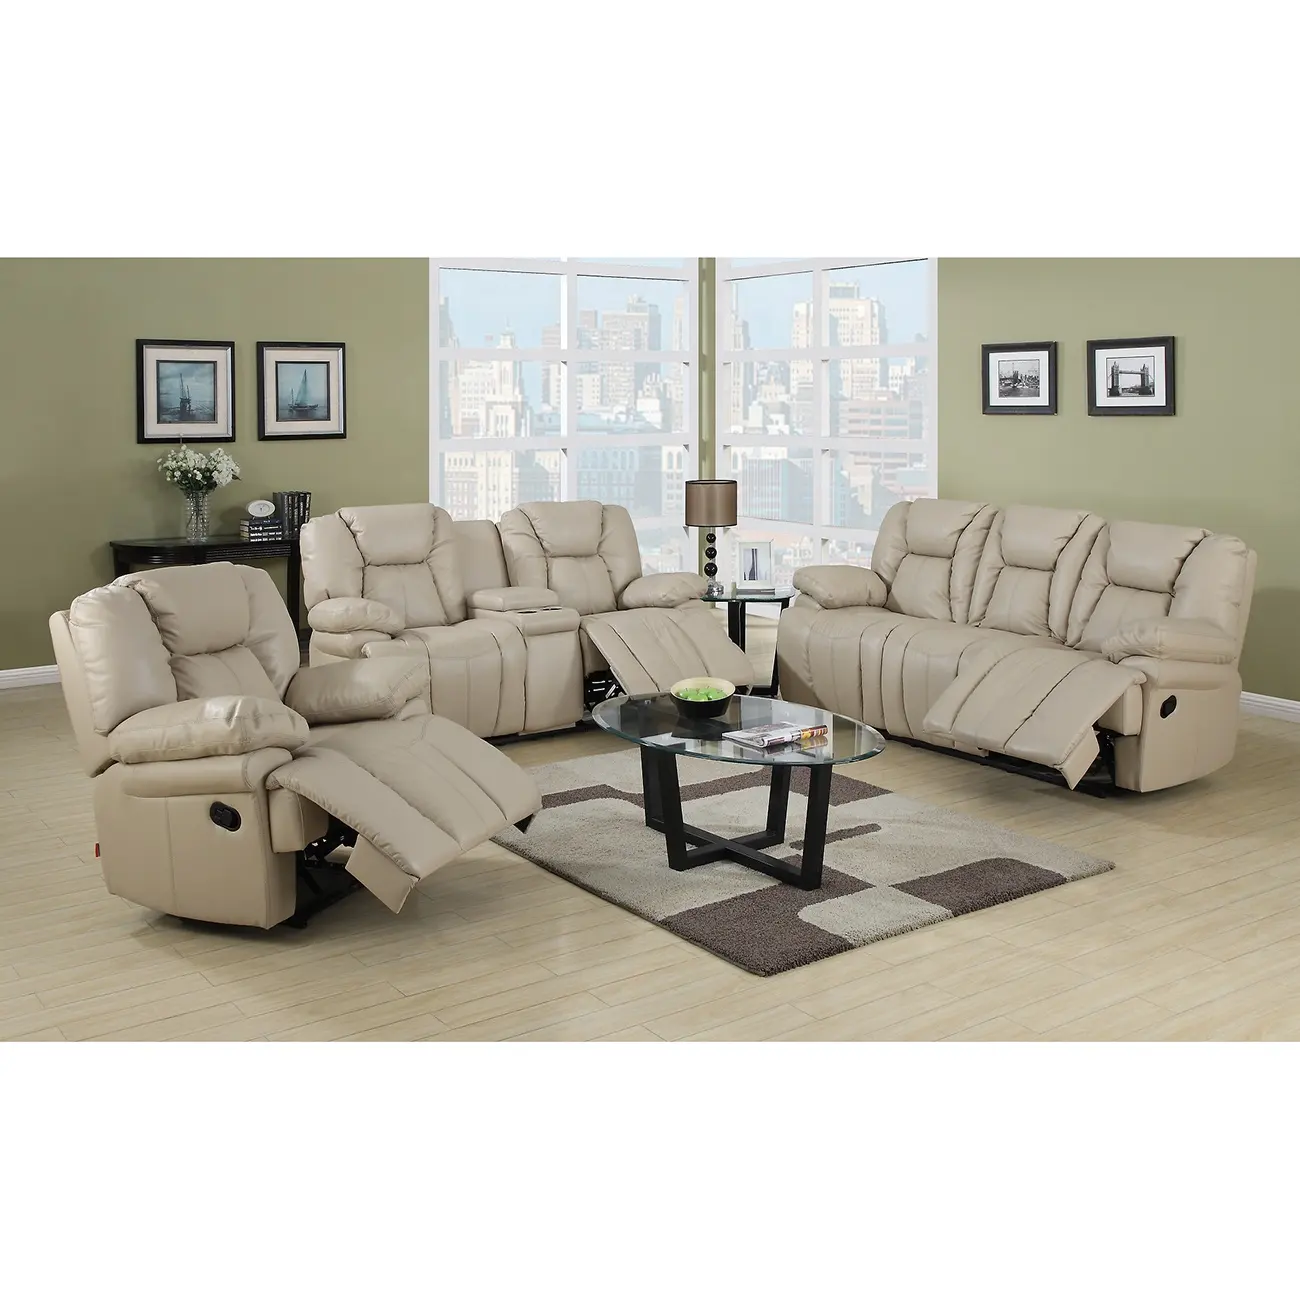 Progettato reclinabile divano set per living room furniture divano set 7 posti sezionale moderno TV poltrona reclinabile